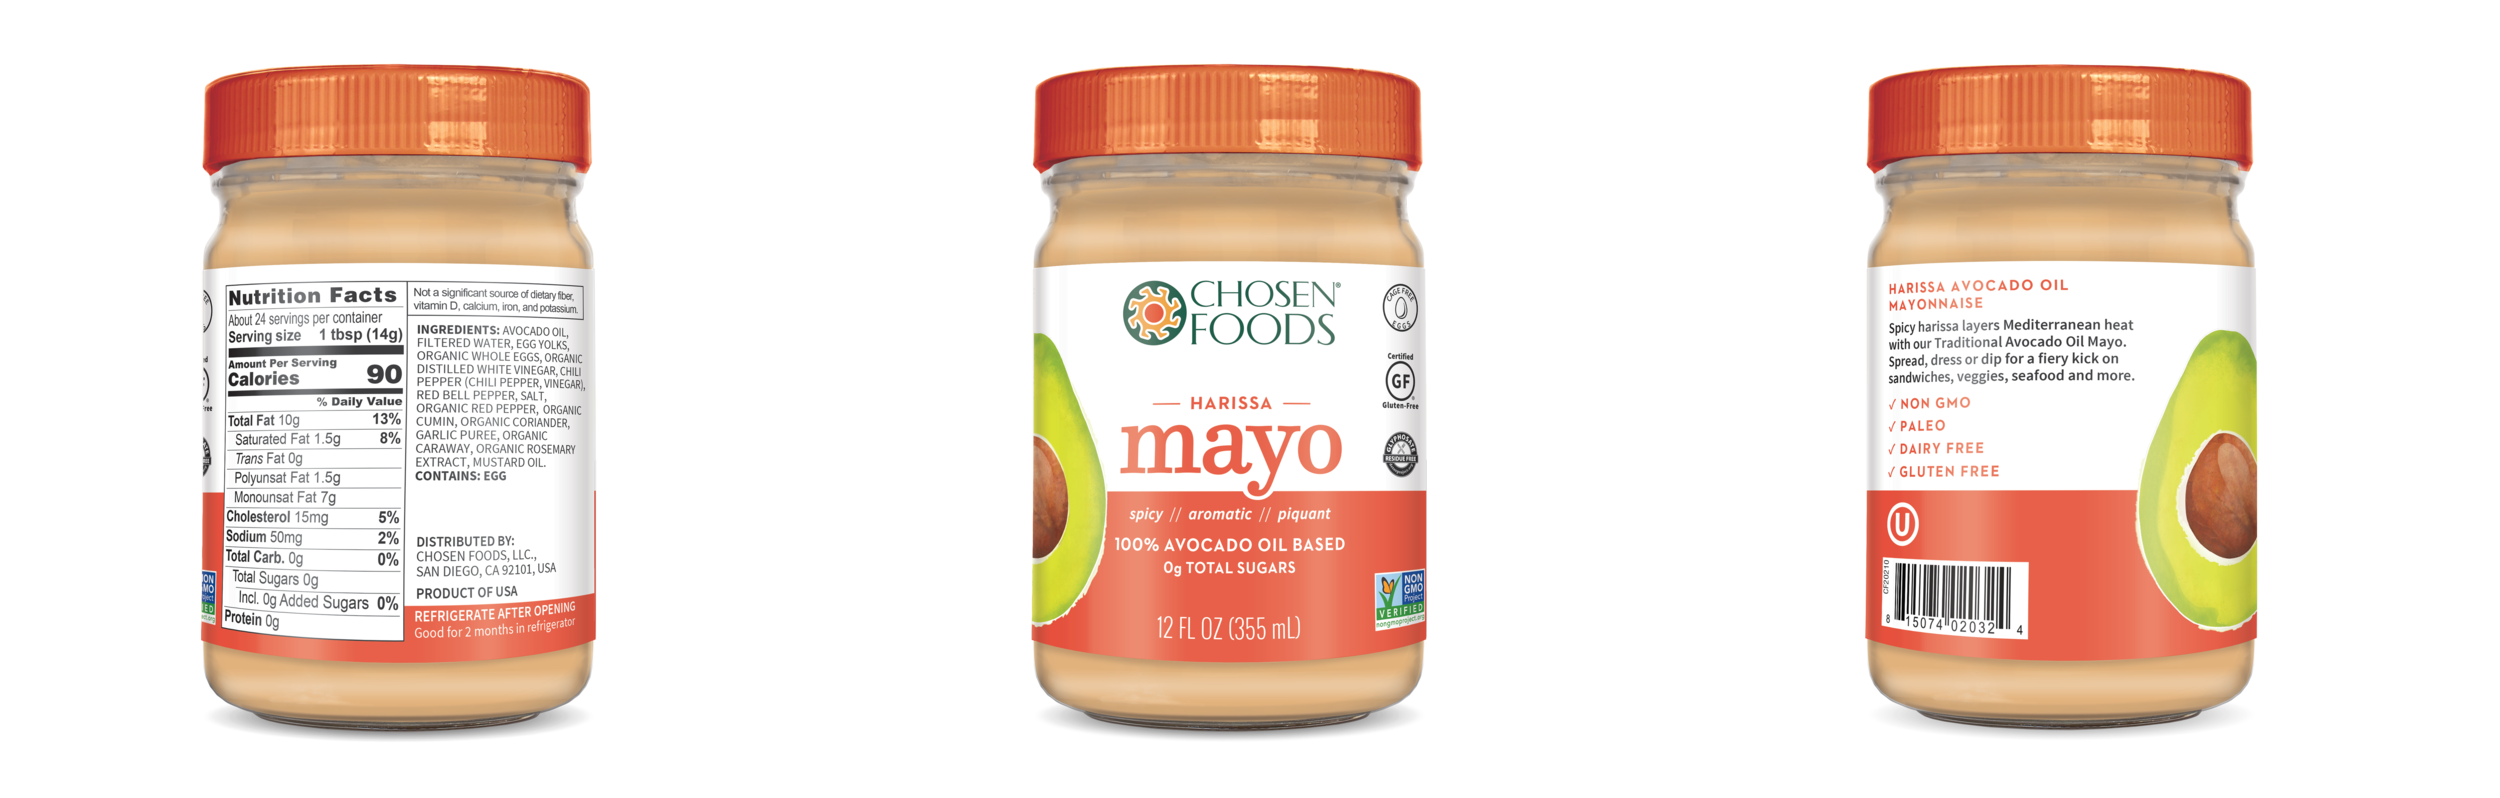 Mayo Jars Labels Harissa.png